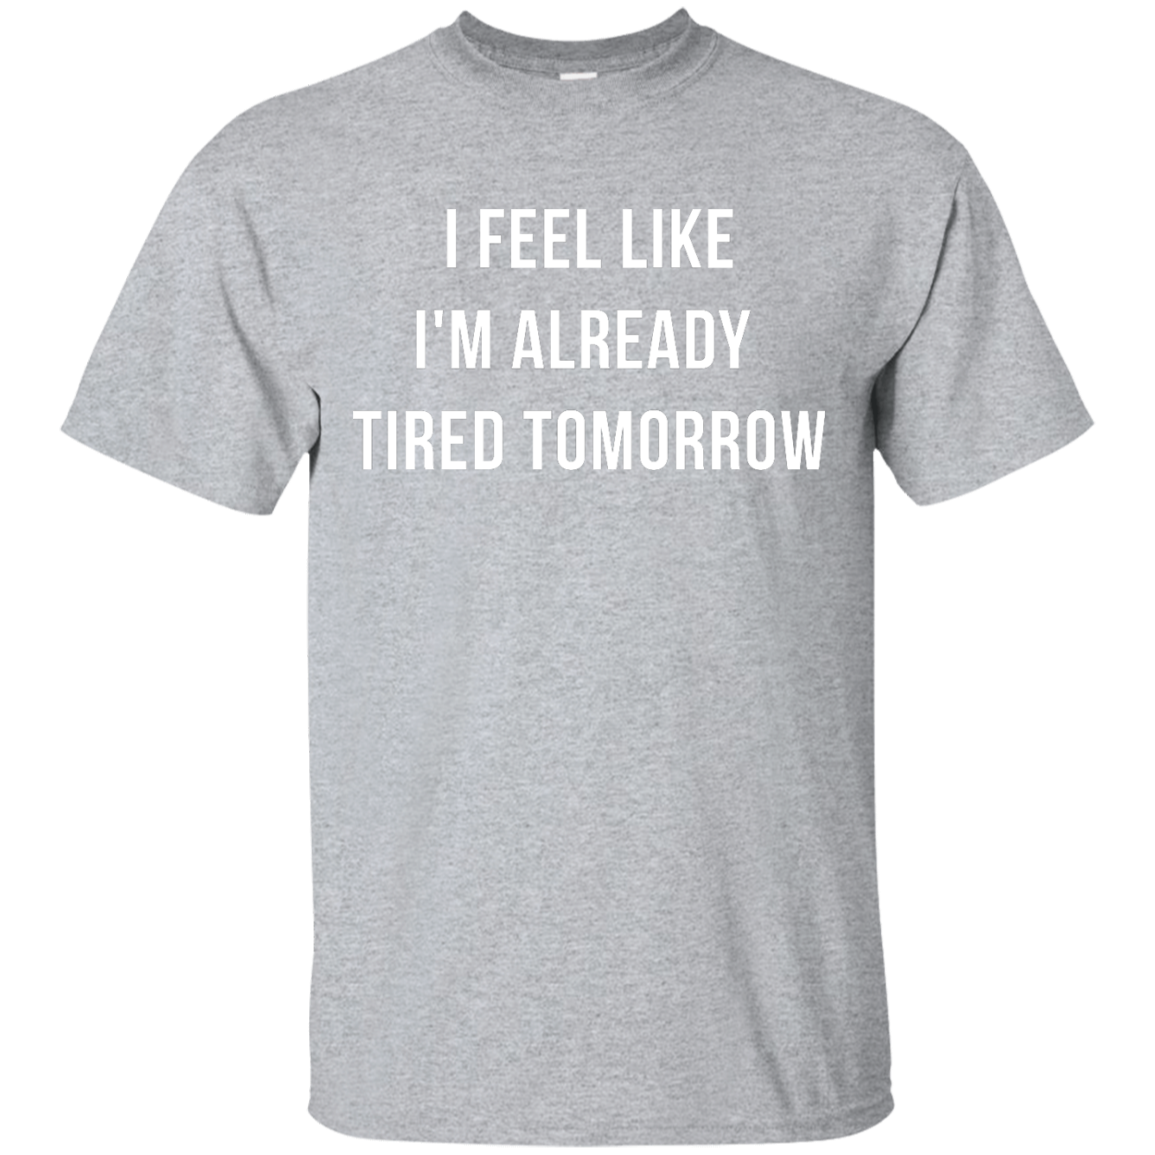 I Feel Like I'm Already Tired Tomorrow shirt, tank, women's tees